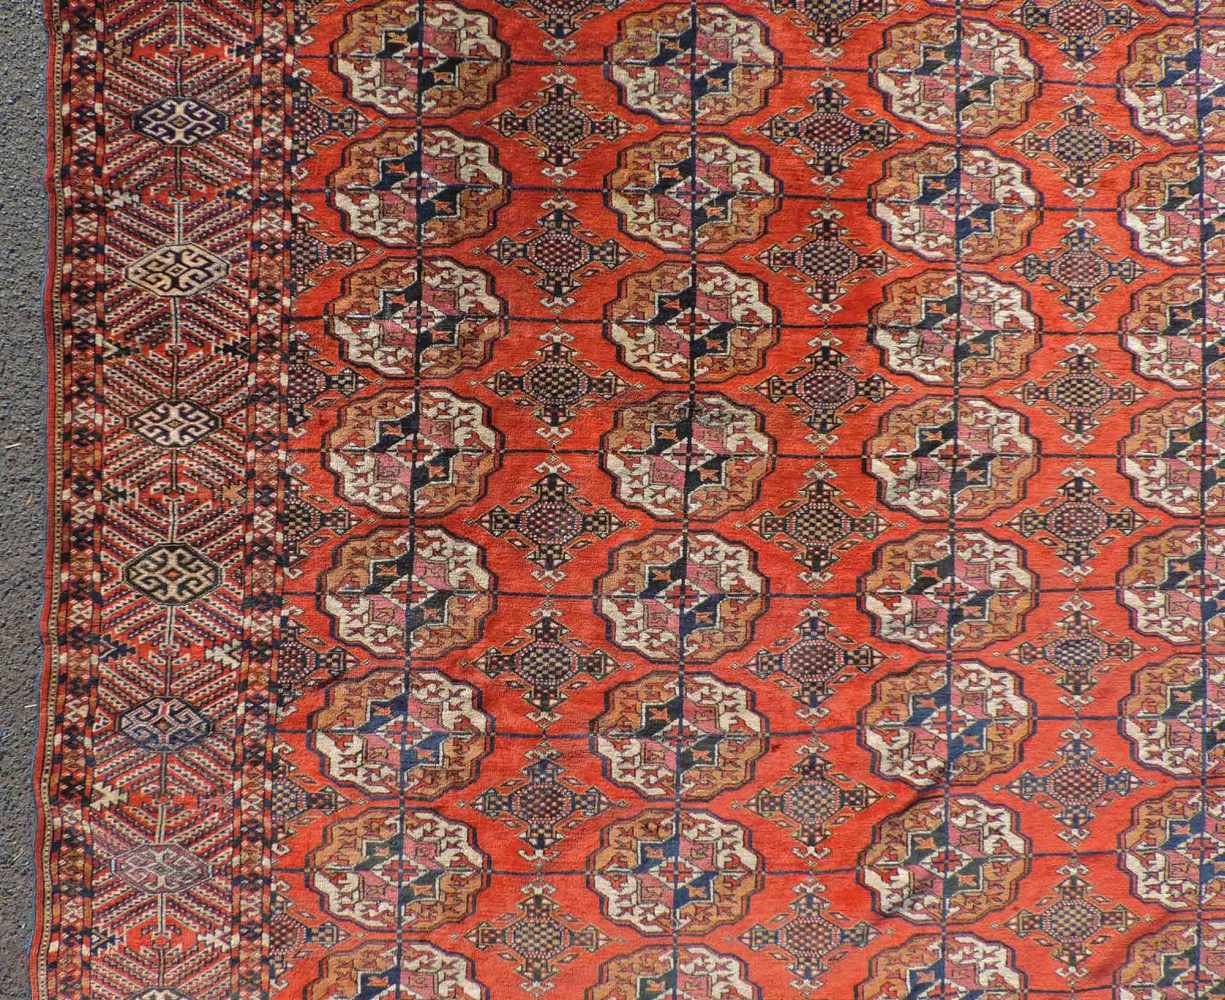 Jomud Stammesteppich. Iran. Antik, um 1910.309 cm x 210 cm. Handgeknüpft. Wolle auf Wolle. Göklan - Image 4 of 8